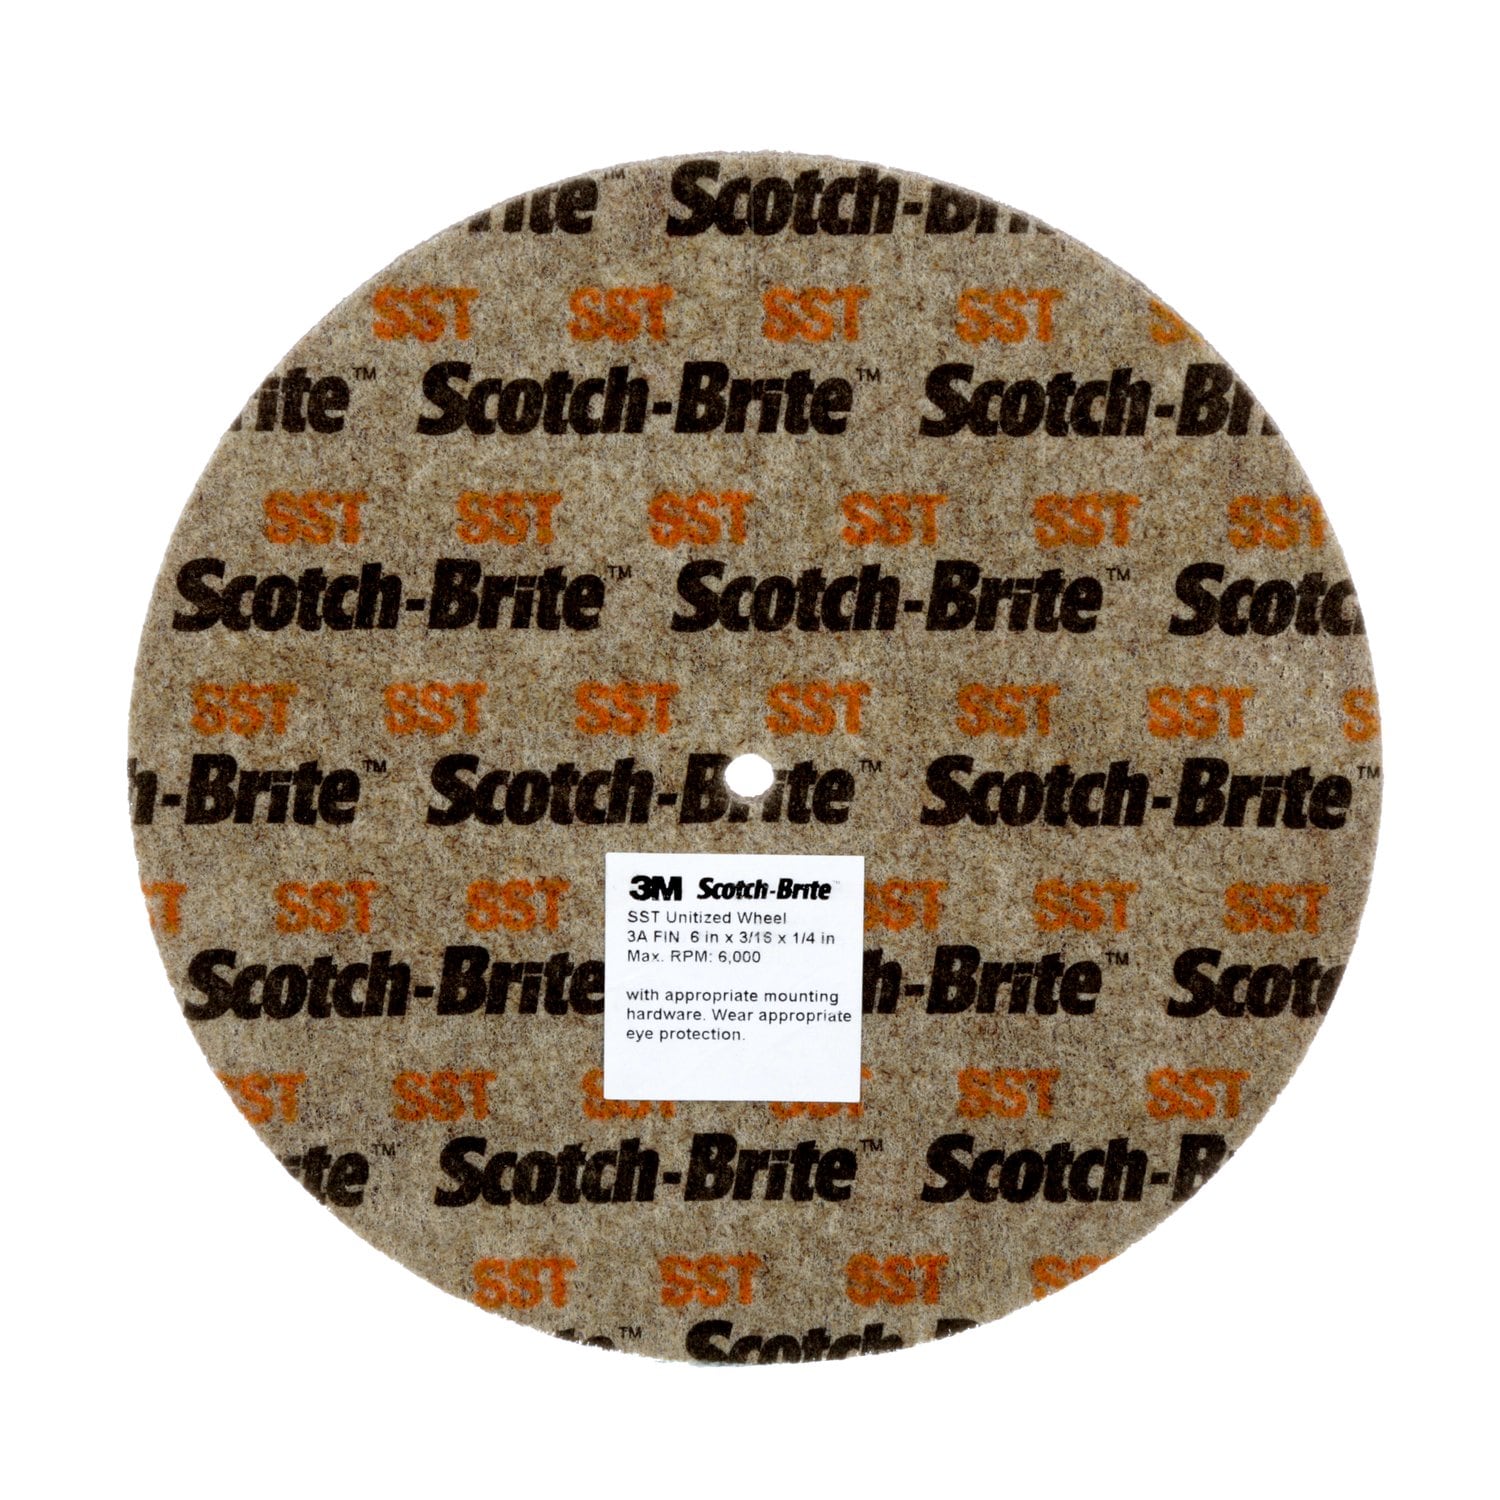 7010329232 - Scotch-Brite SST Unitized Wheel, 5A Fine, 14 in x 1/2 in x 1-1/4 in, 2
ea/Case